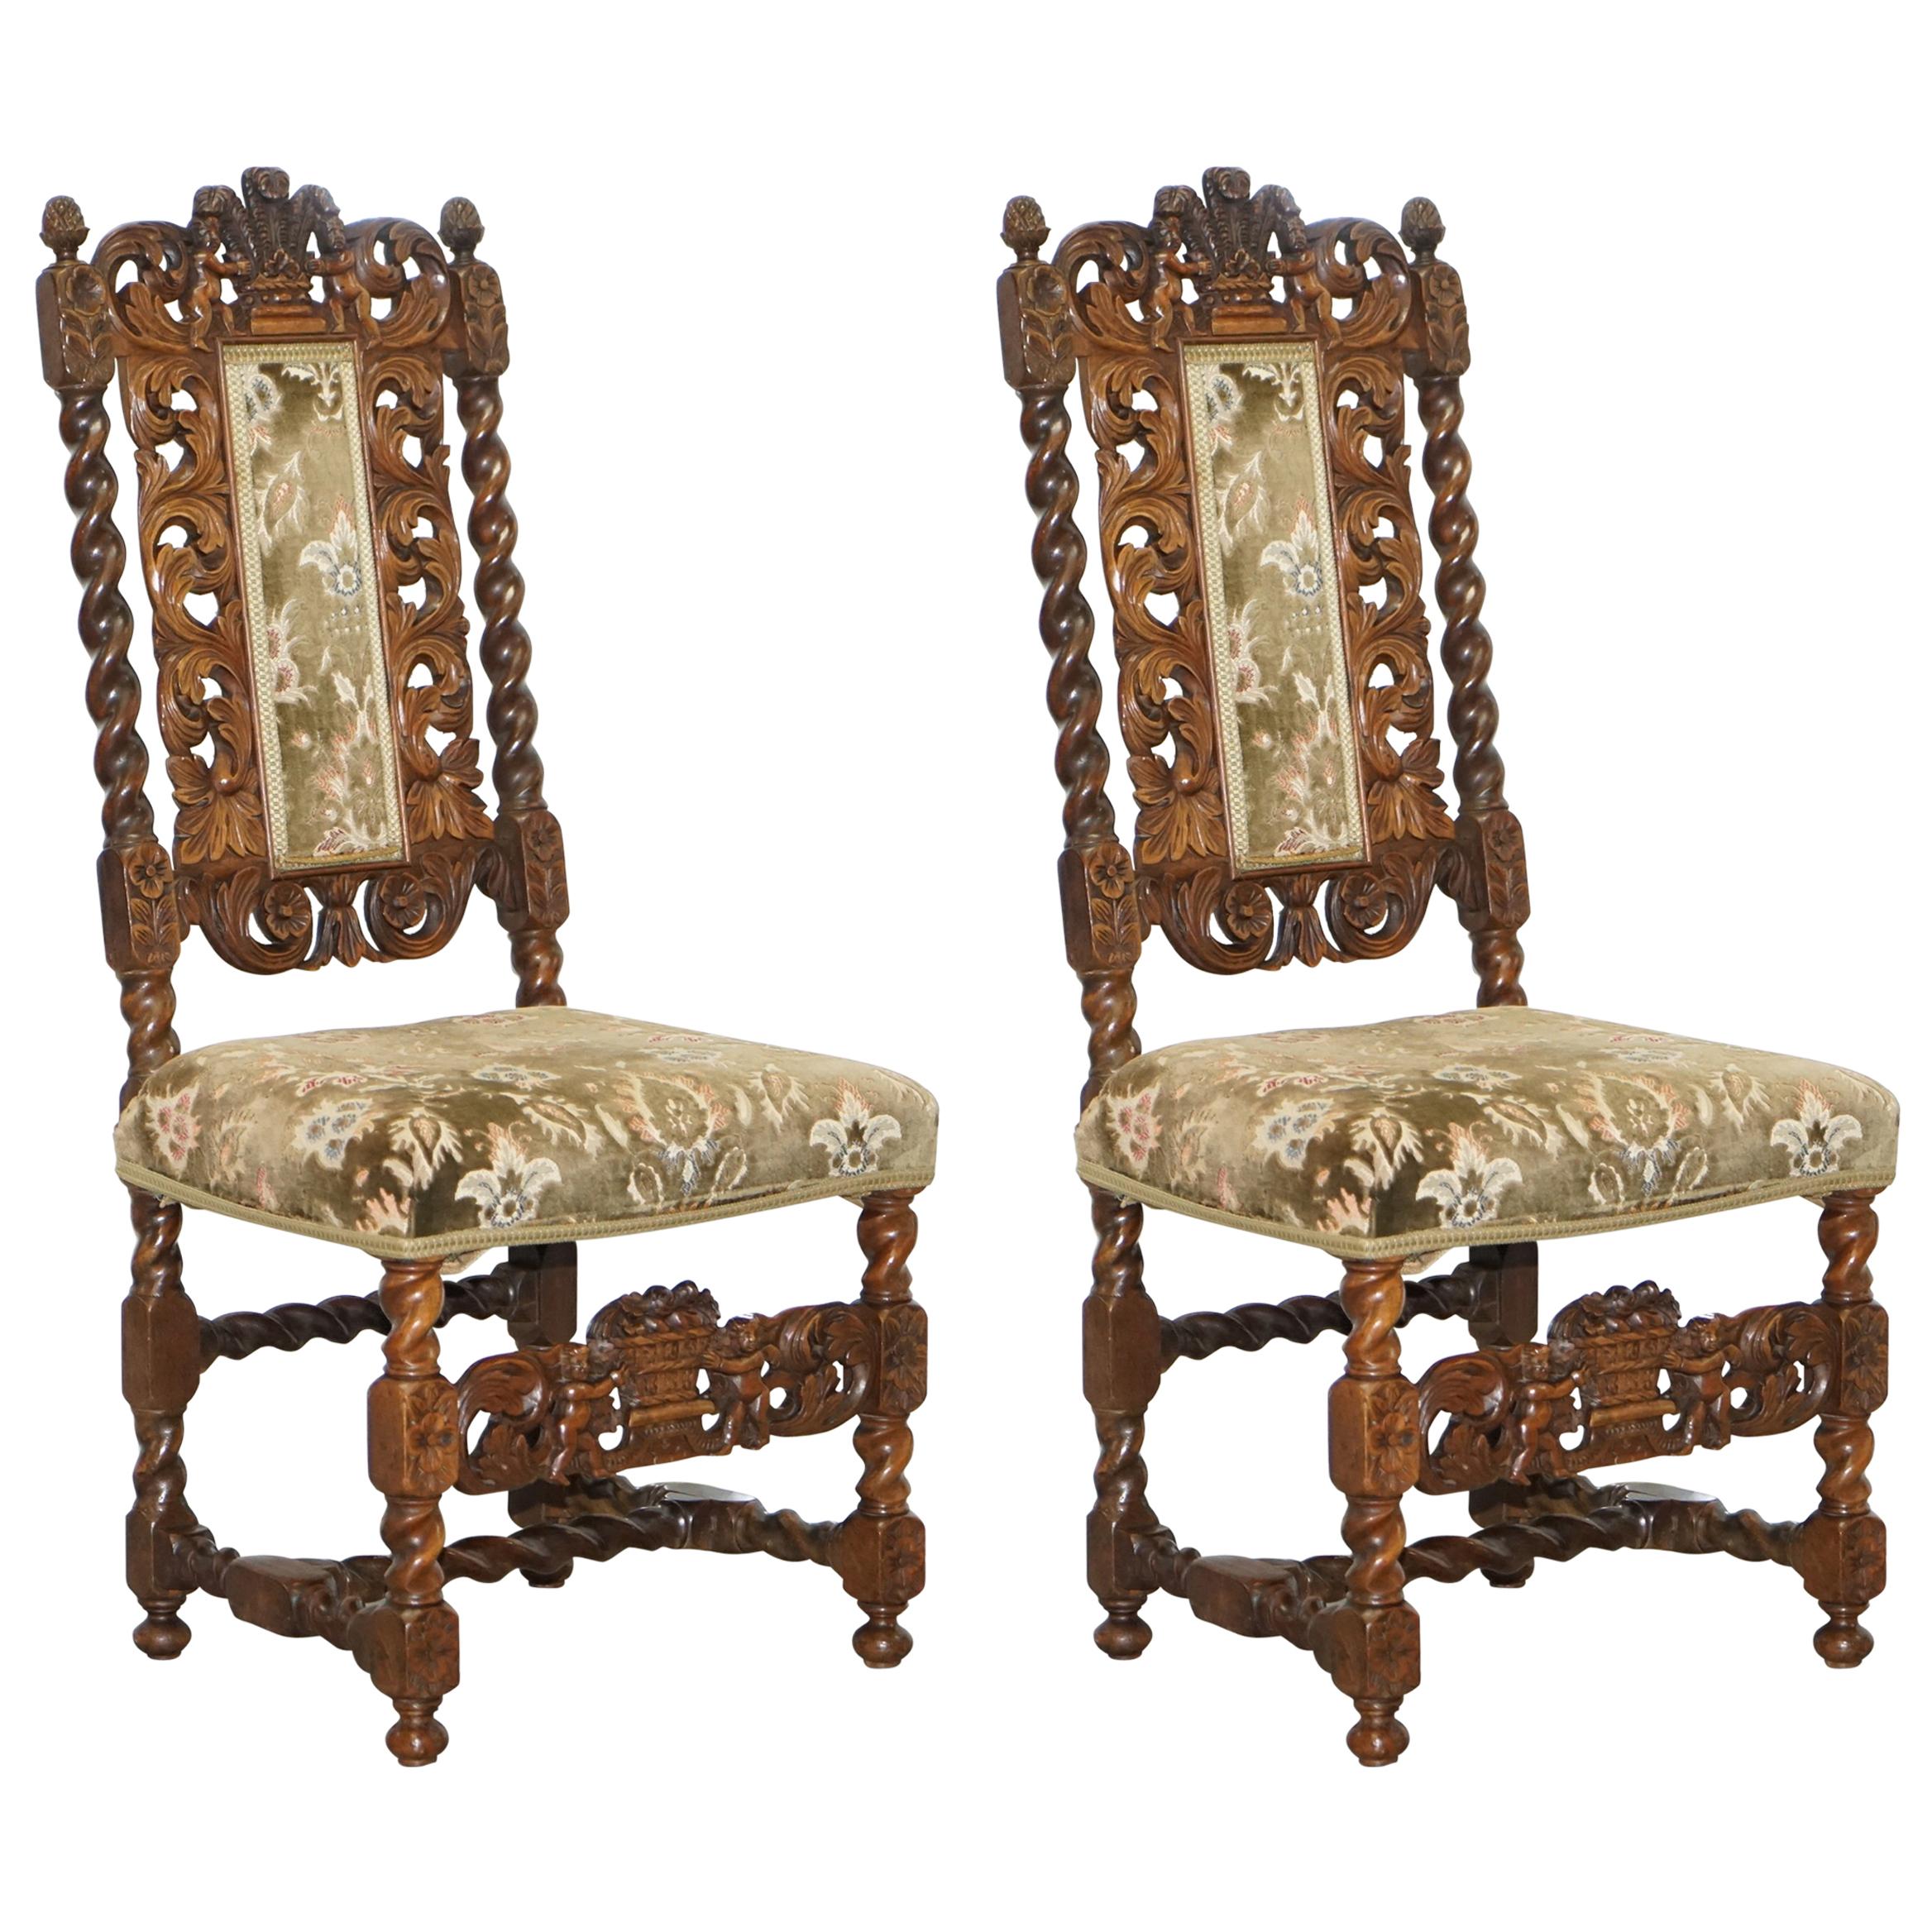 Paire de chaises en bois fruitier sculpté du 18ème siècle représentant des chérubins tenant une couronne et des fleurs